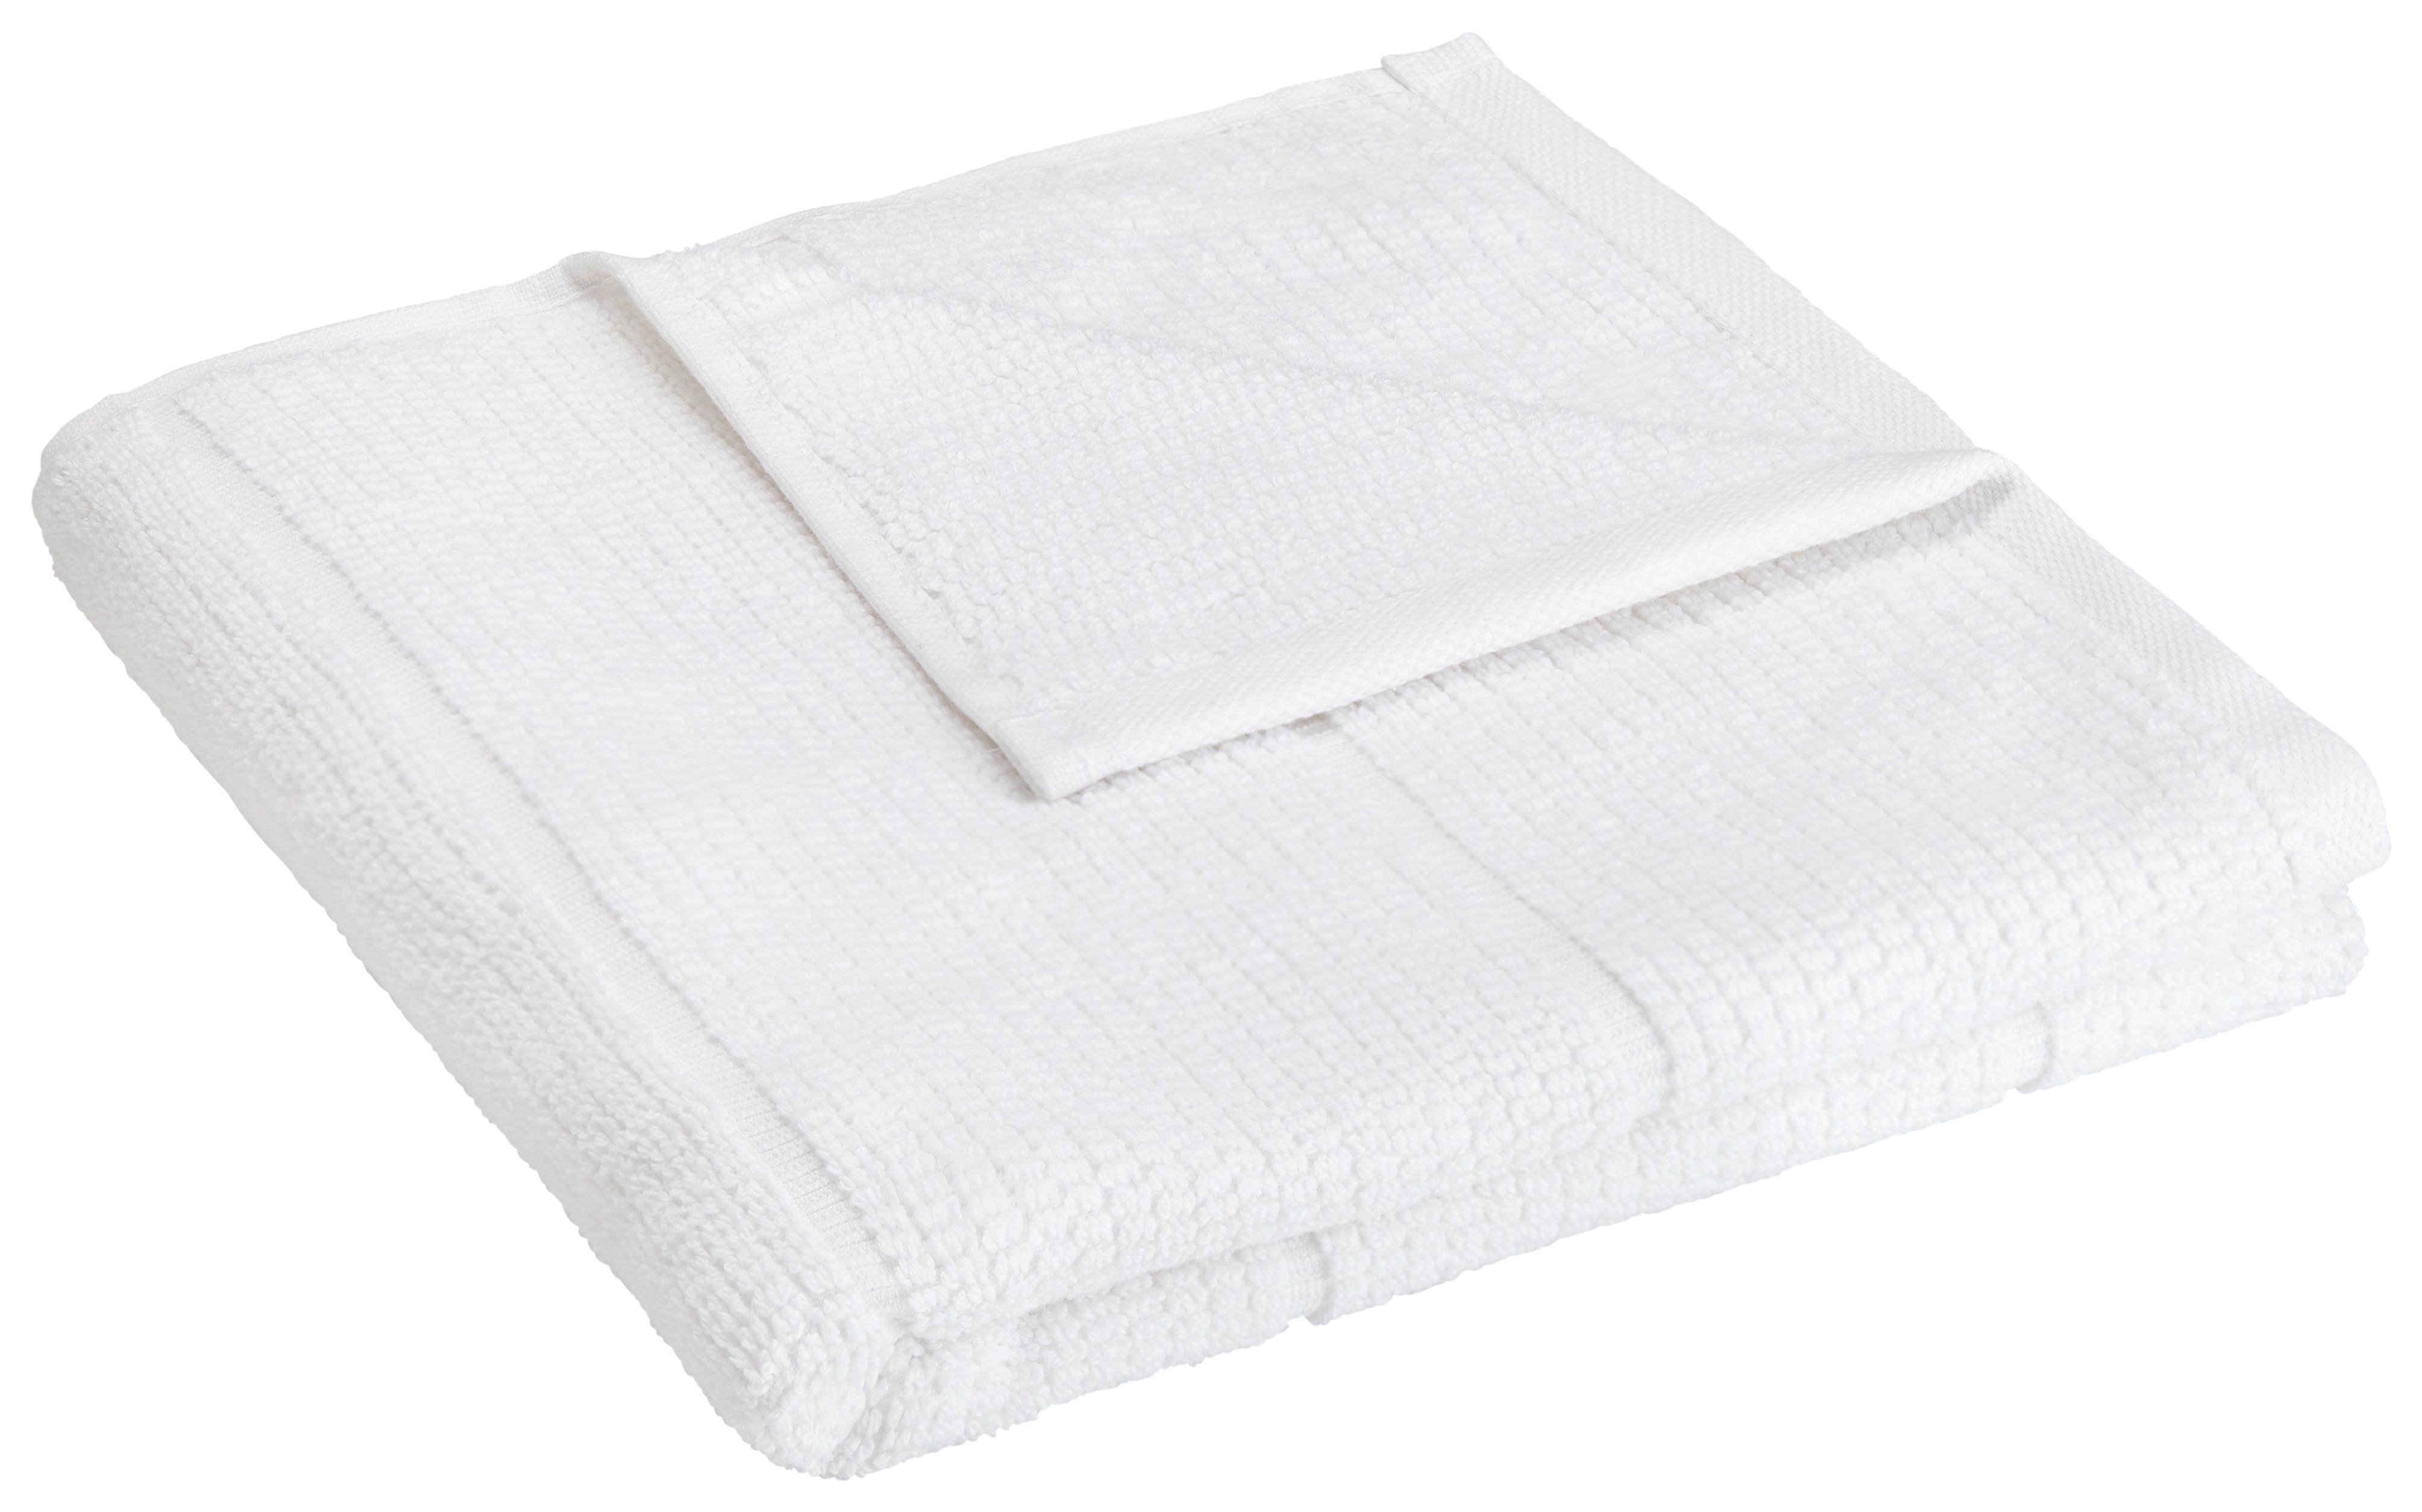 Handtuch Anna in Weiß ca. 50x100cm - Weiß, Textil (50/100cm) - Modern Living